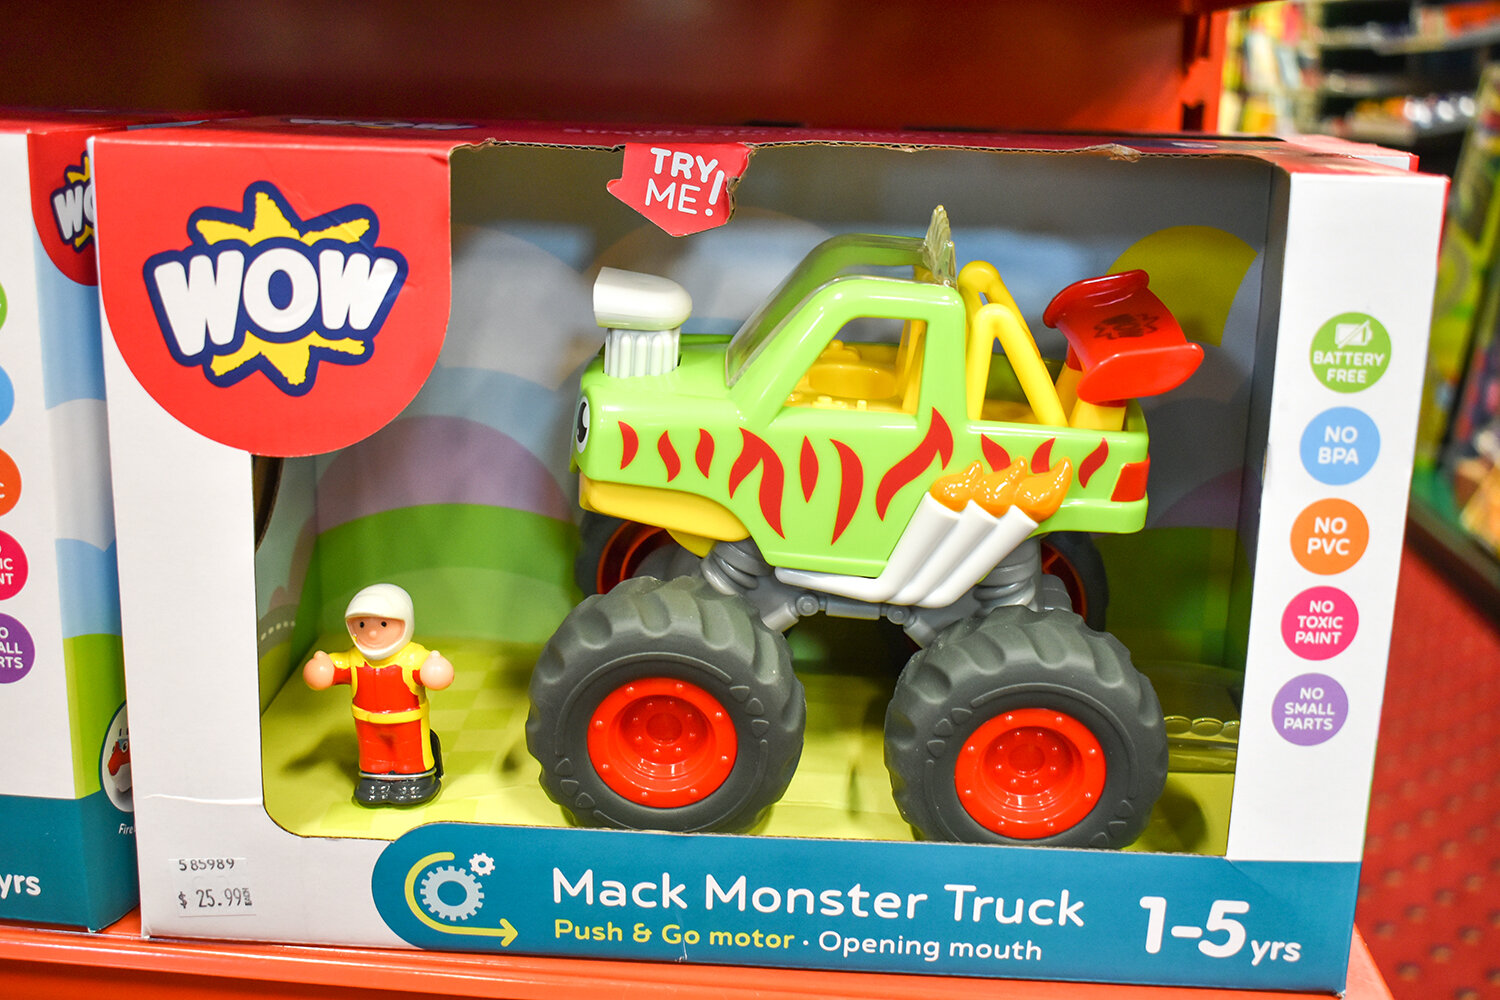 Phillips Toy Mart Car WOW Mack Monster Truck.JPG